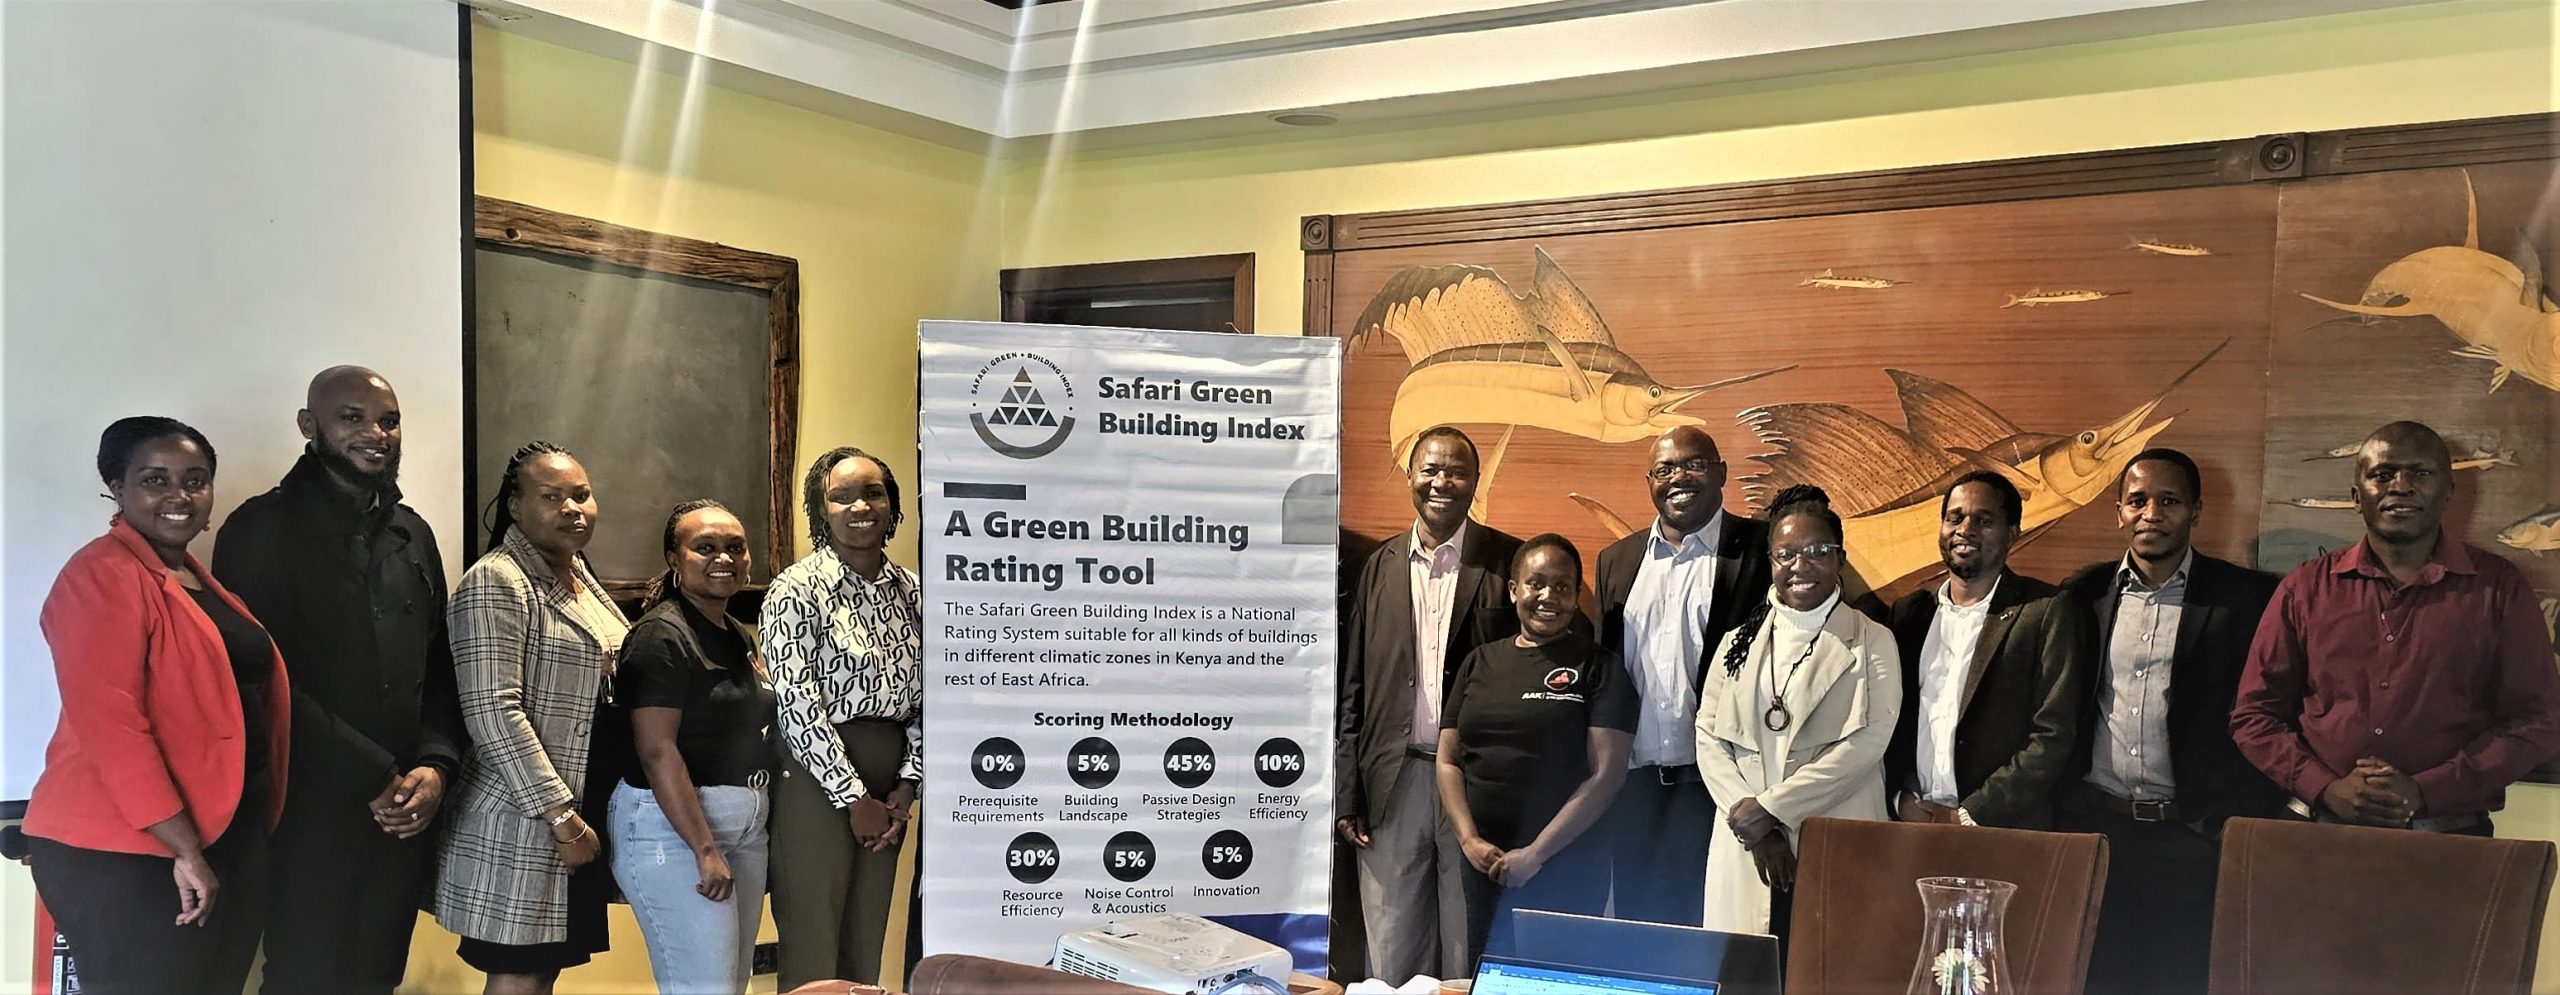 Safari Green Building Index board Holds Workshop